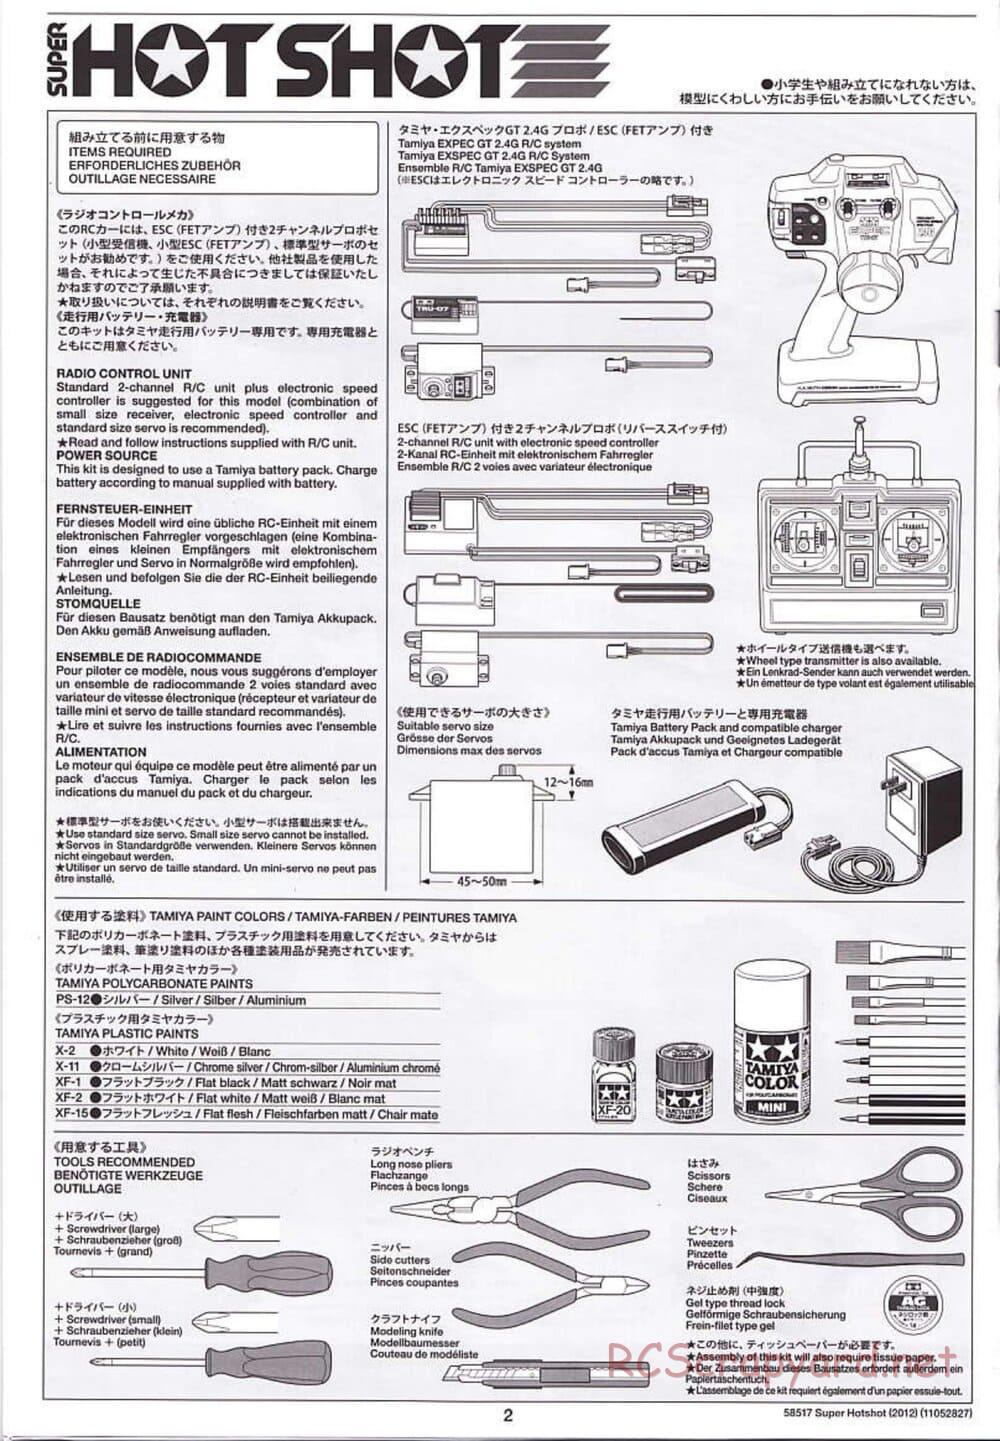 Tamiya - Super Hotshot 2012 - HS Chassis - Manual - Page 2